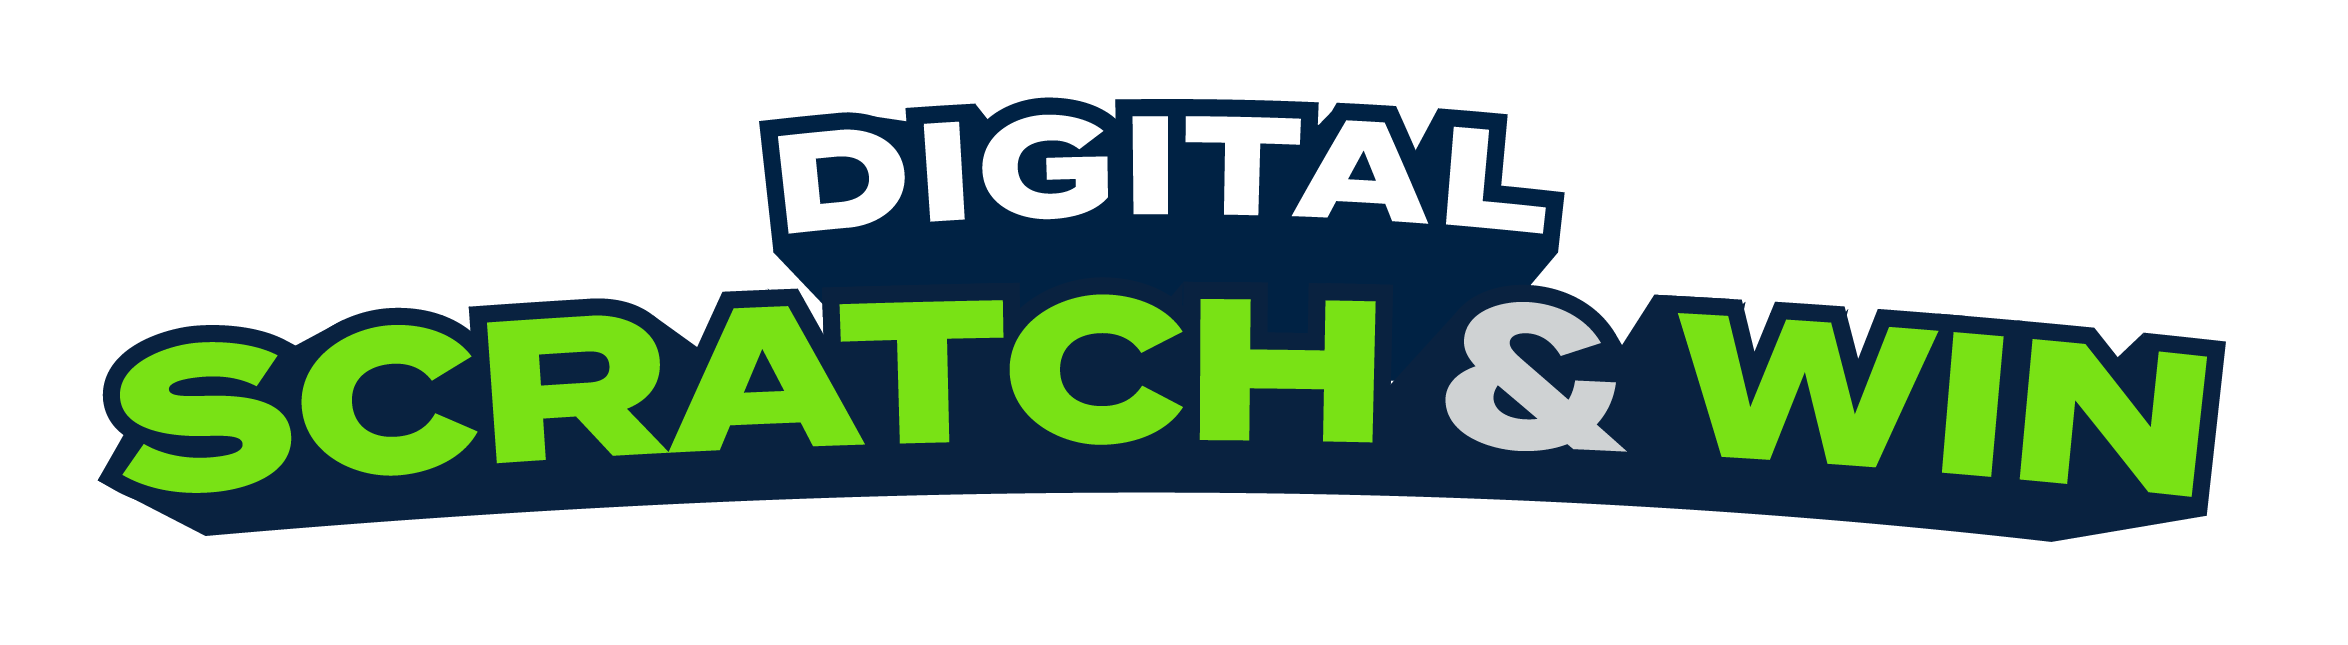 211223-digital-scratch-and-win-logo